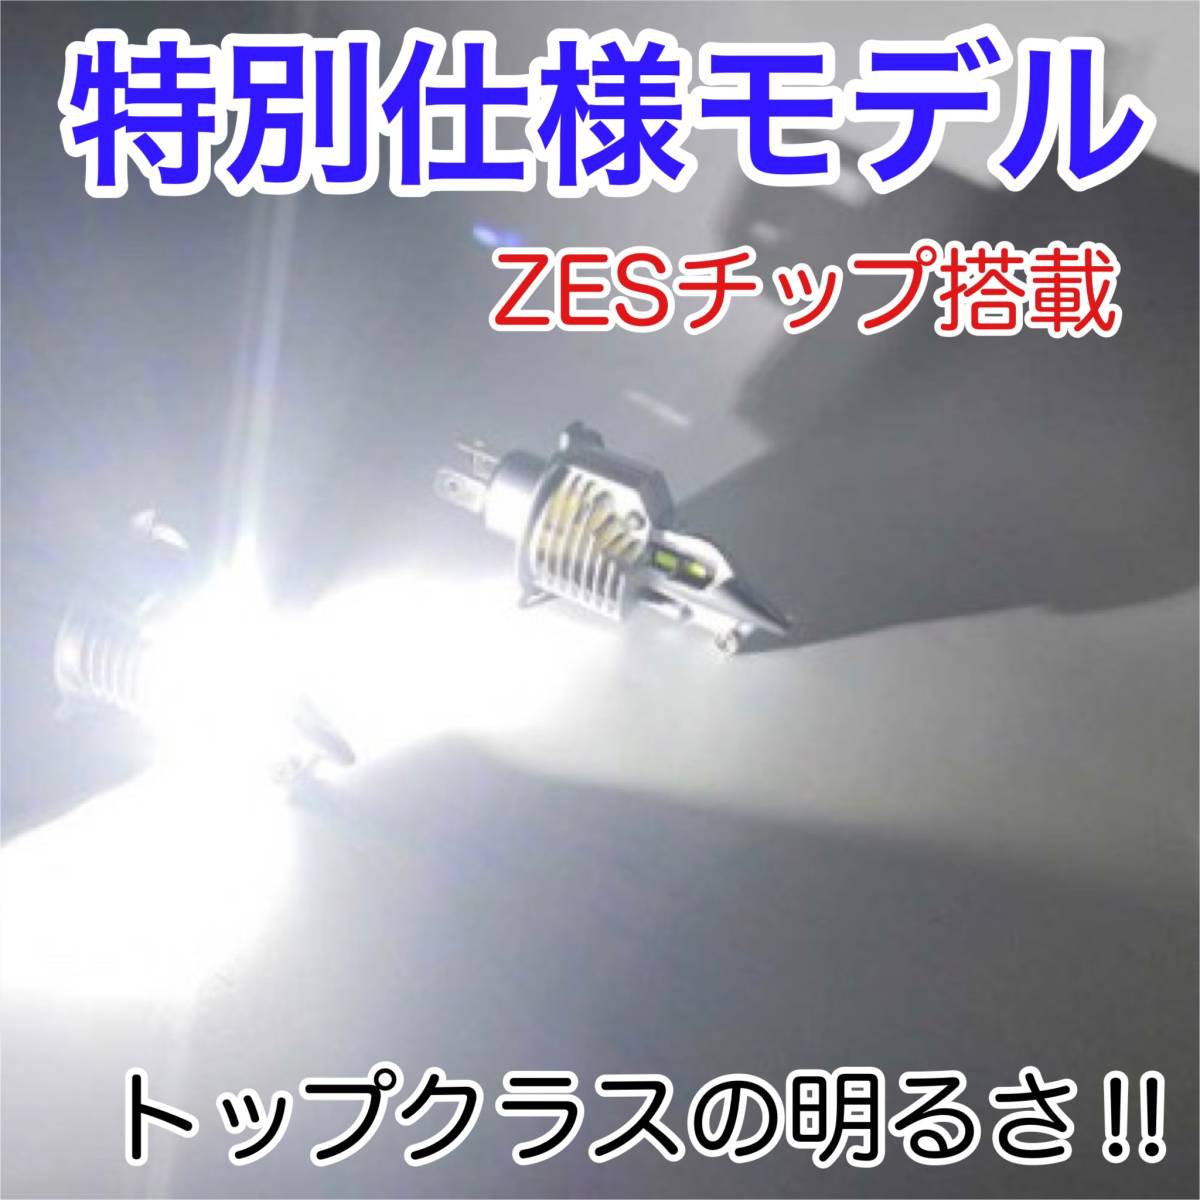 KAWASAKI カワサキ スーパーシェルパ-2000- KL250G LEDヘッドライト H4 Hi/Lo バルブ バイク用 1灯 S25 テールランプ2個 ホワイト 交換用